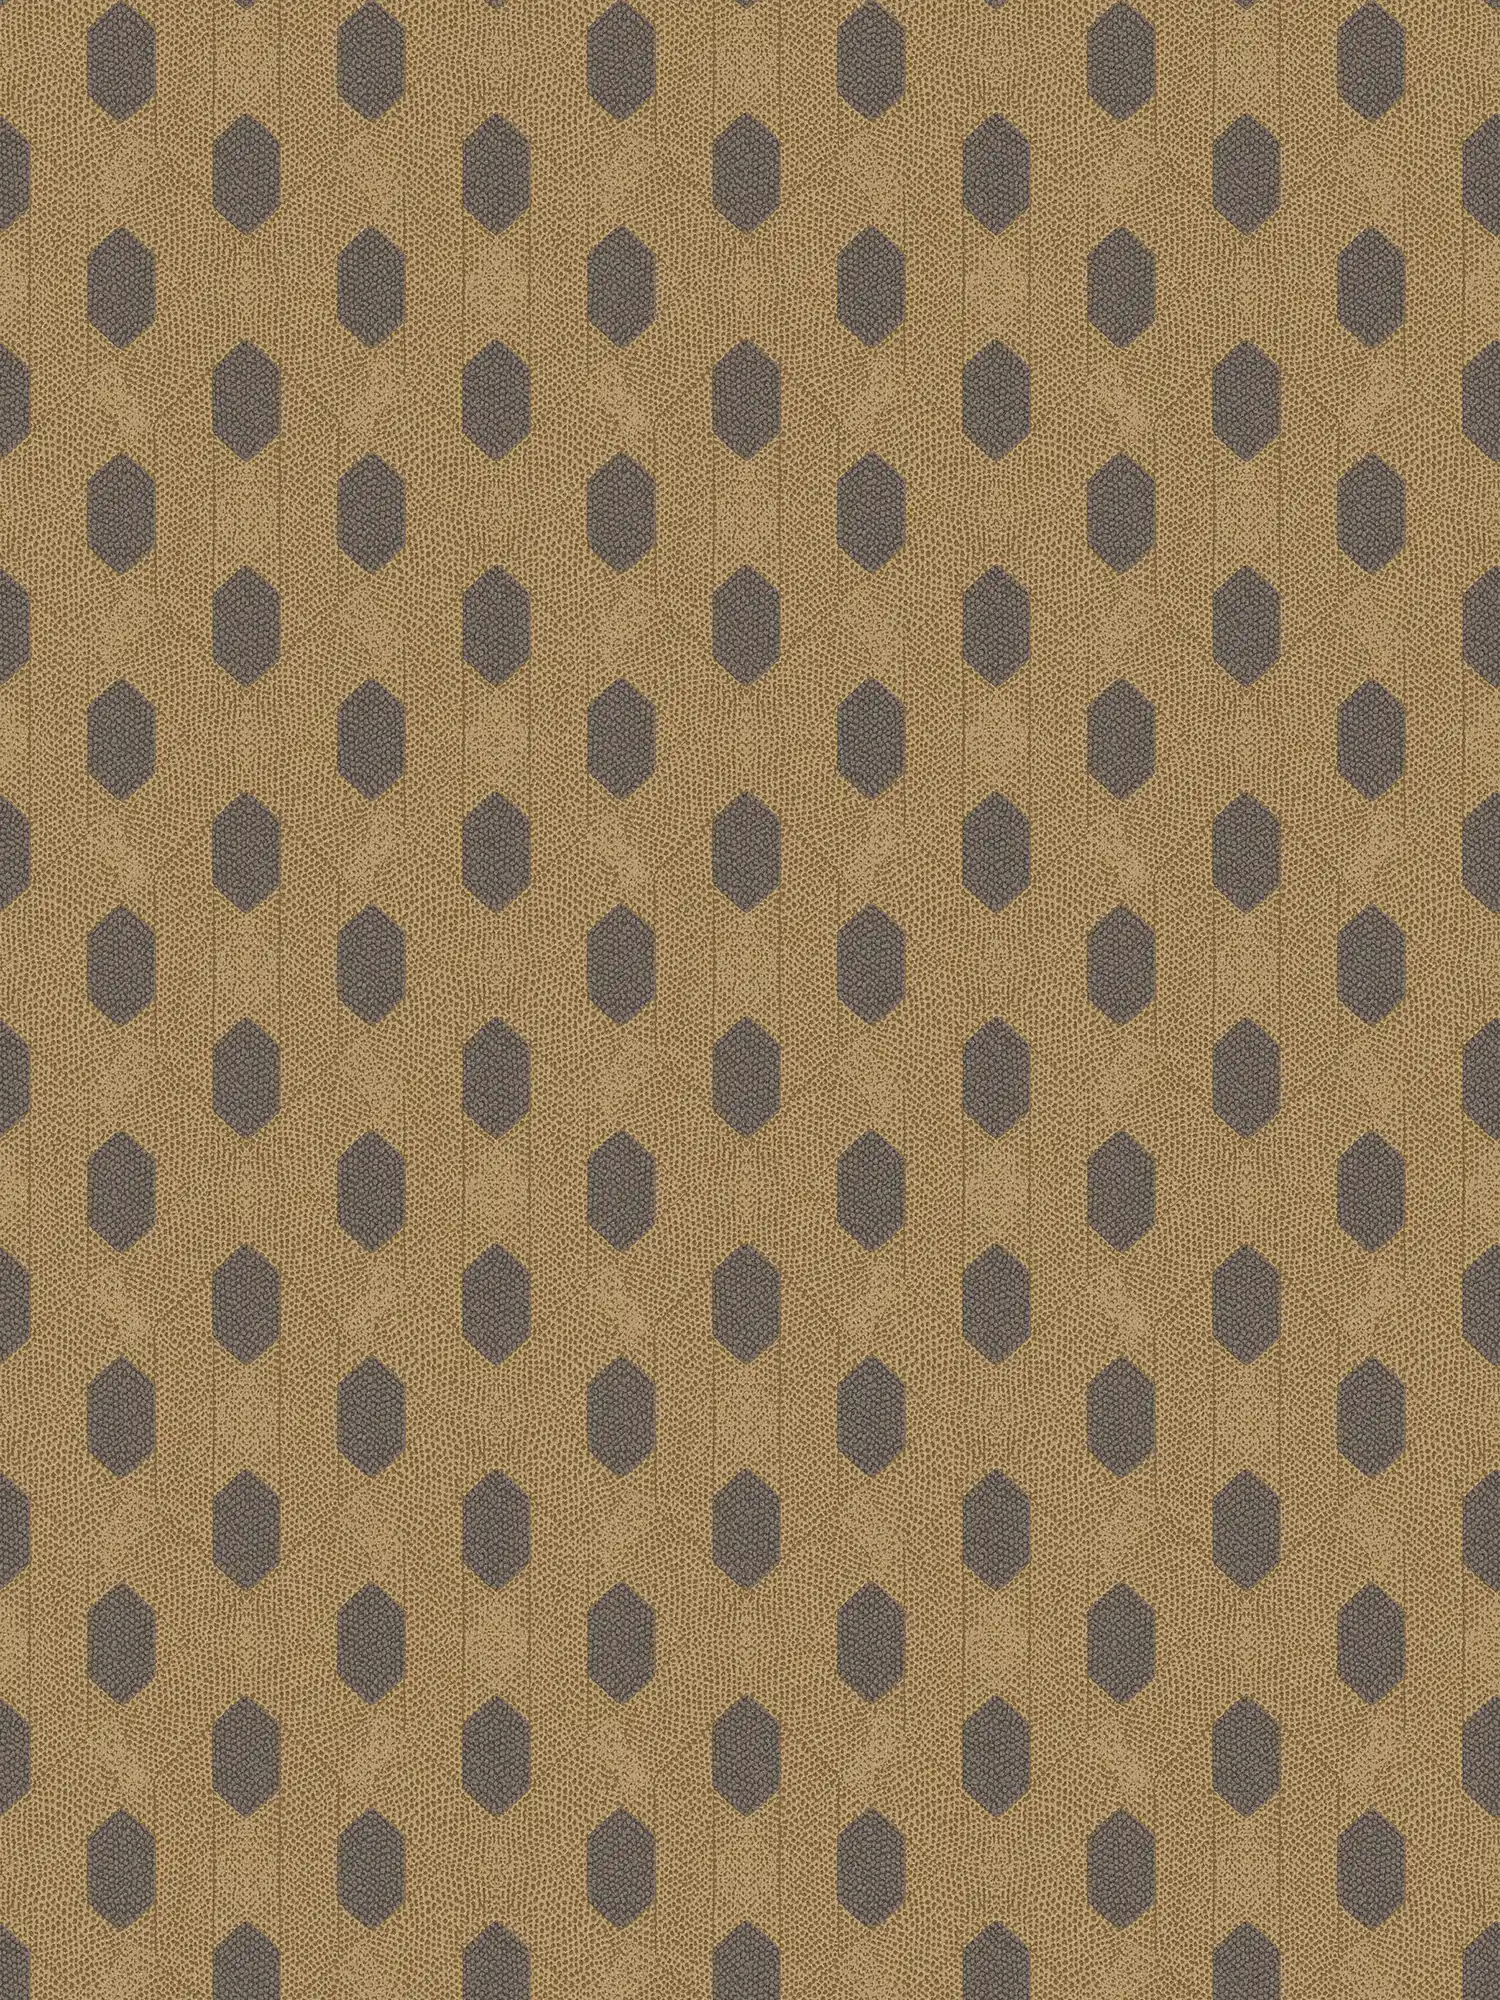 Vliesbehang goud met geometrisch patroon - bruin, goud, zwart
